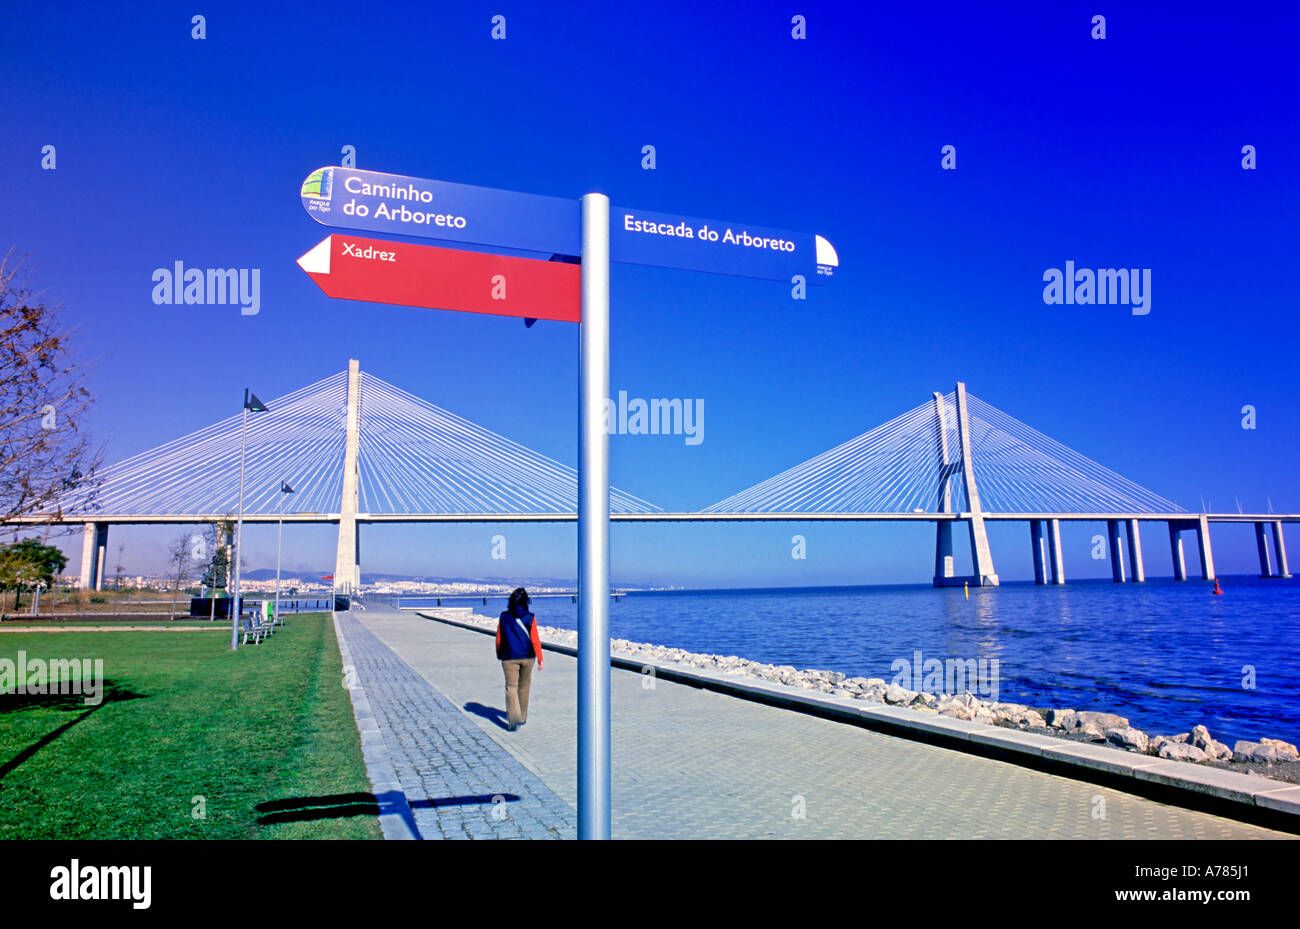 Riverside, Tage et le pont Vasco da Gama, Parque das Nações, Lisbonne, Portugal Banque D'Images